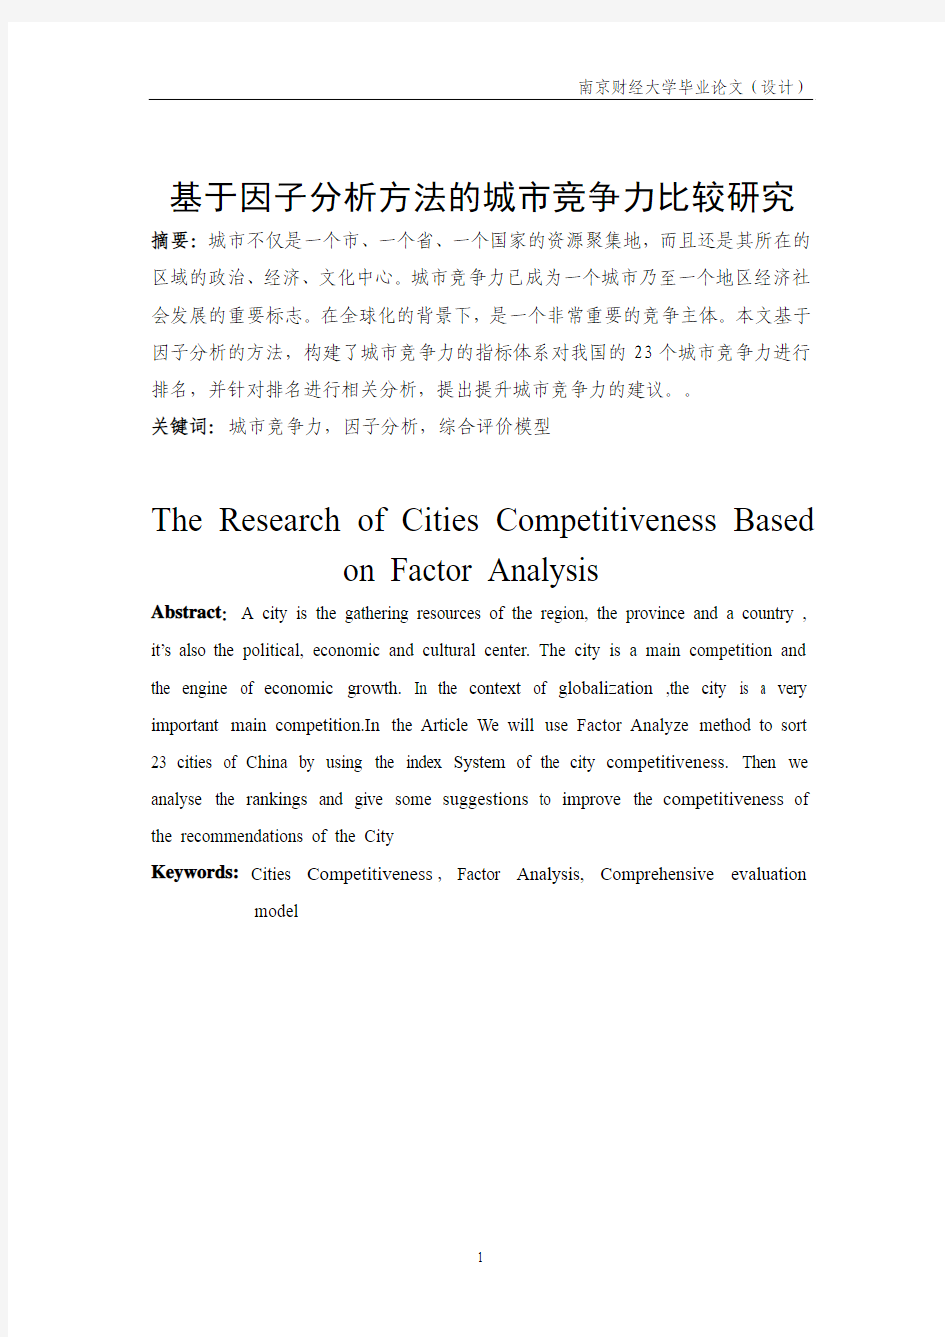 基于因子分析方法的城市竞争力比较研究